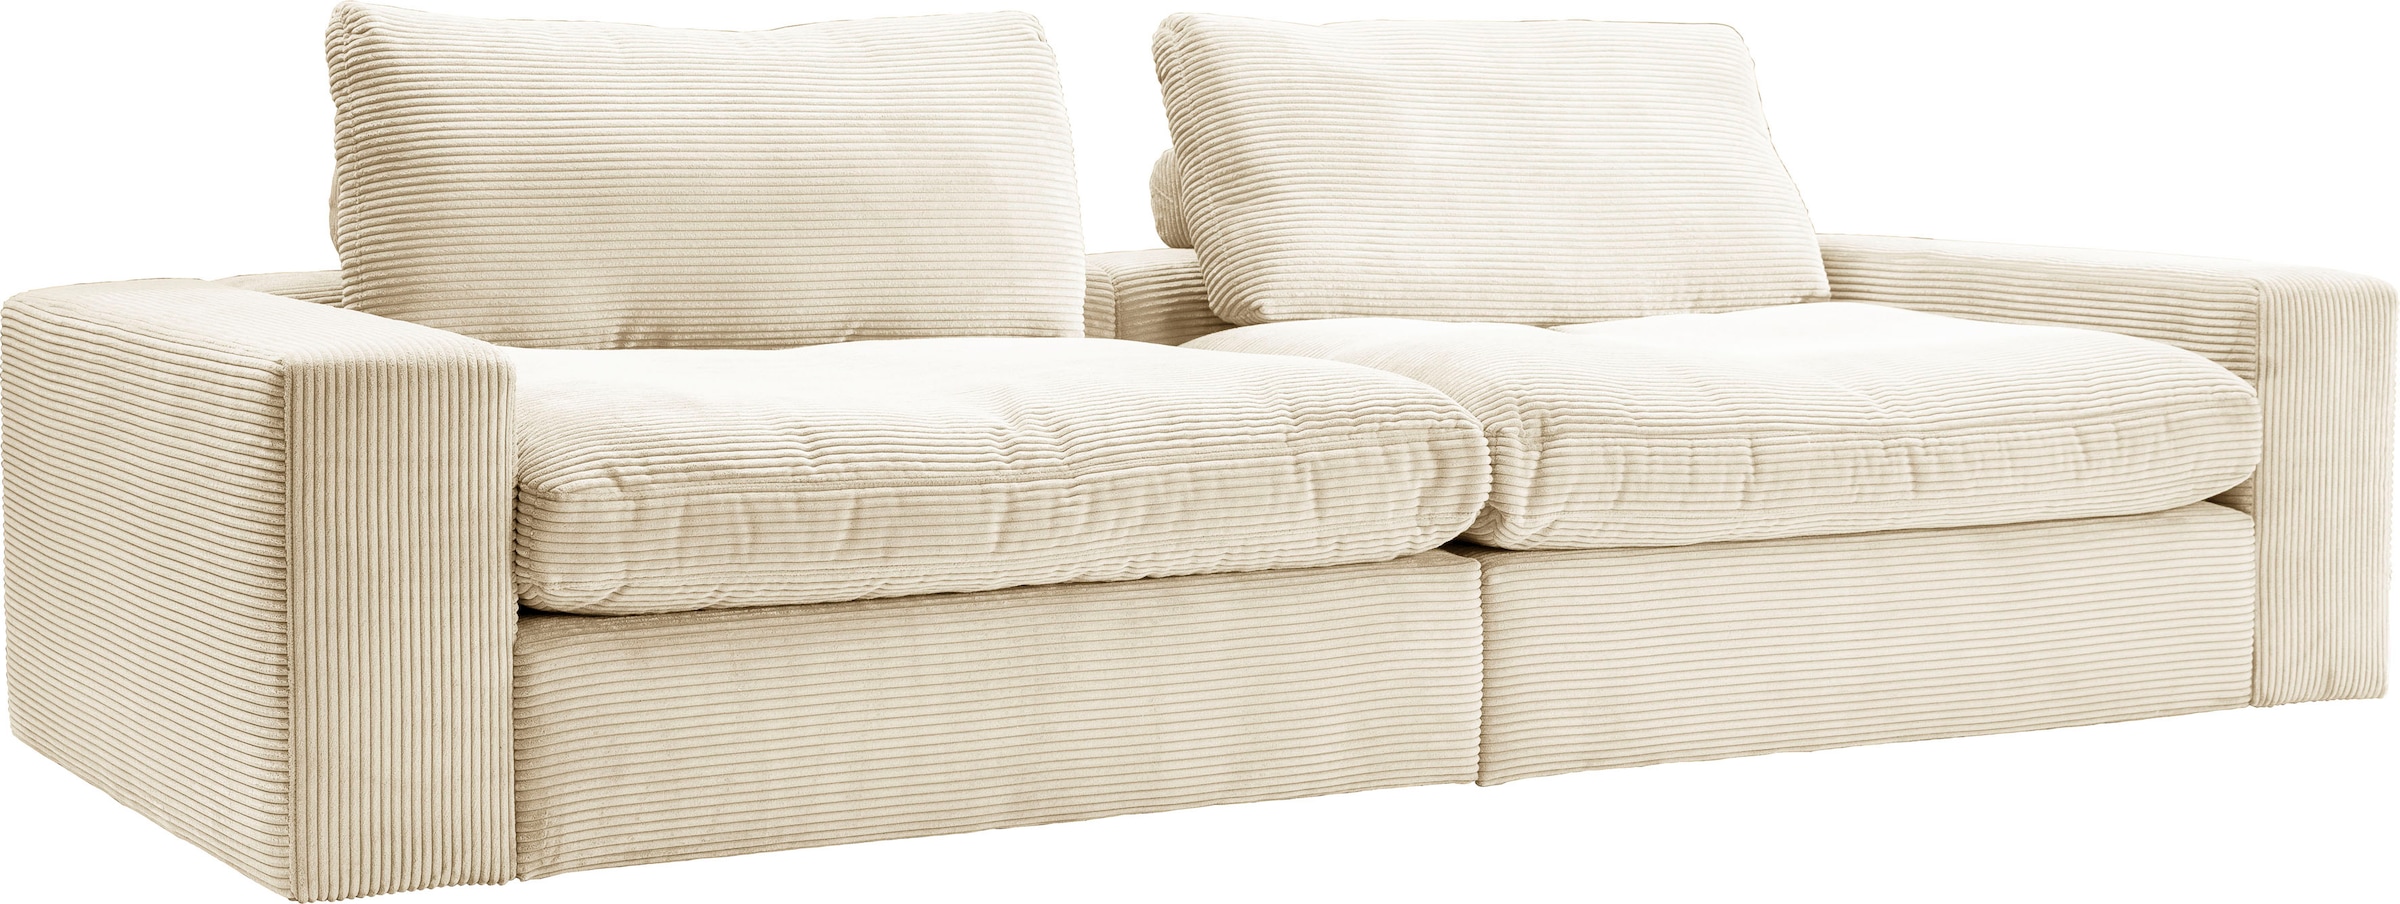 alina Big-Sofa »Sandy«, 296 cm breit und 98 cm tief, in modernem Cordstoff